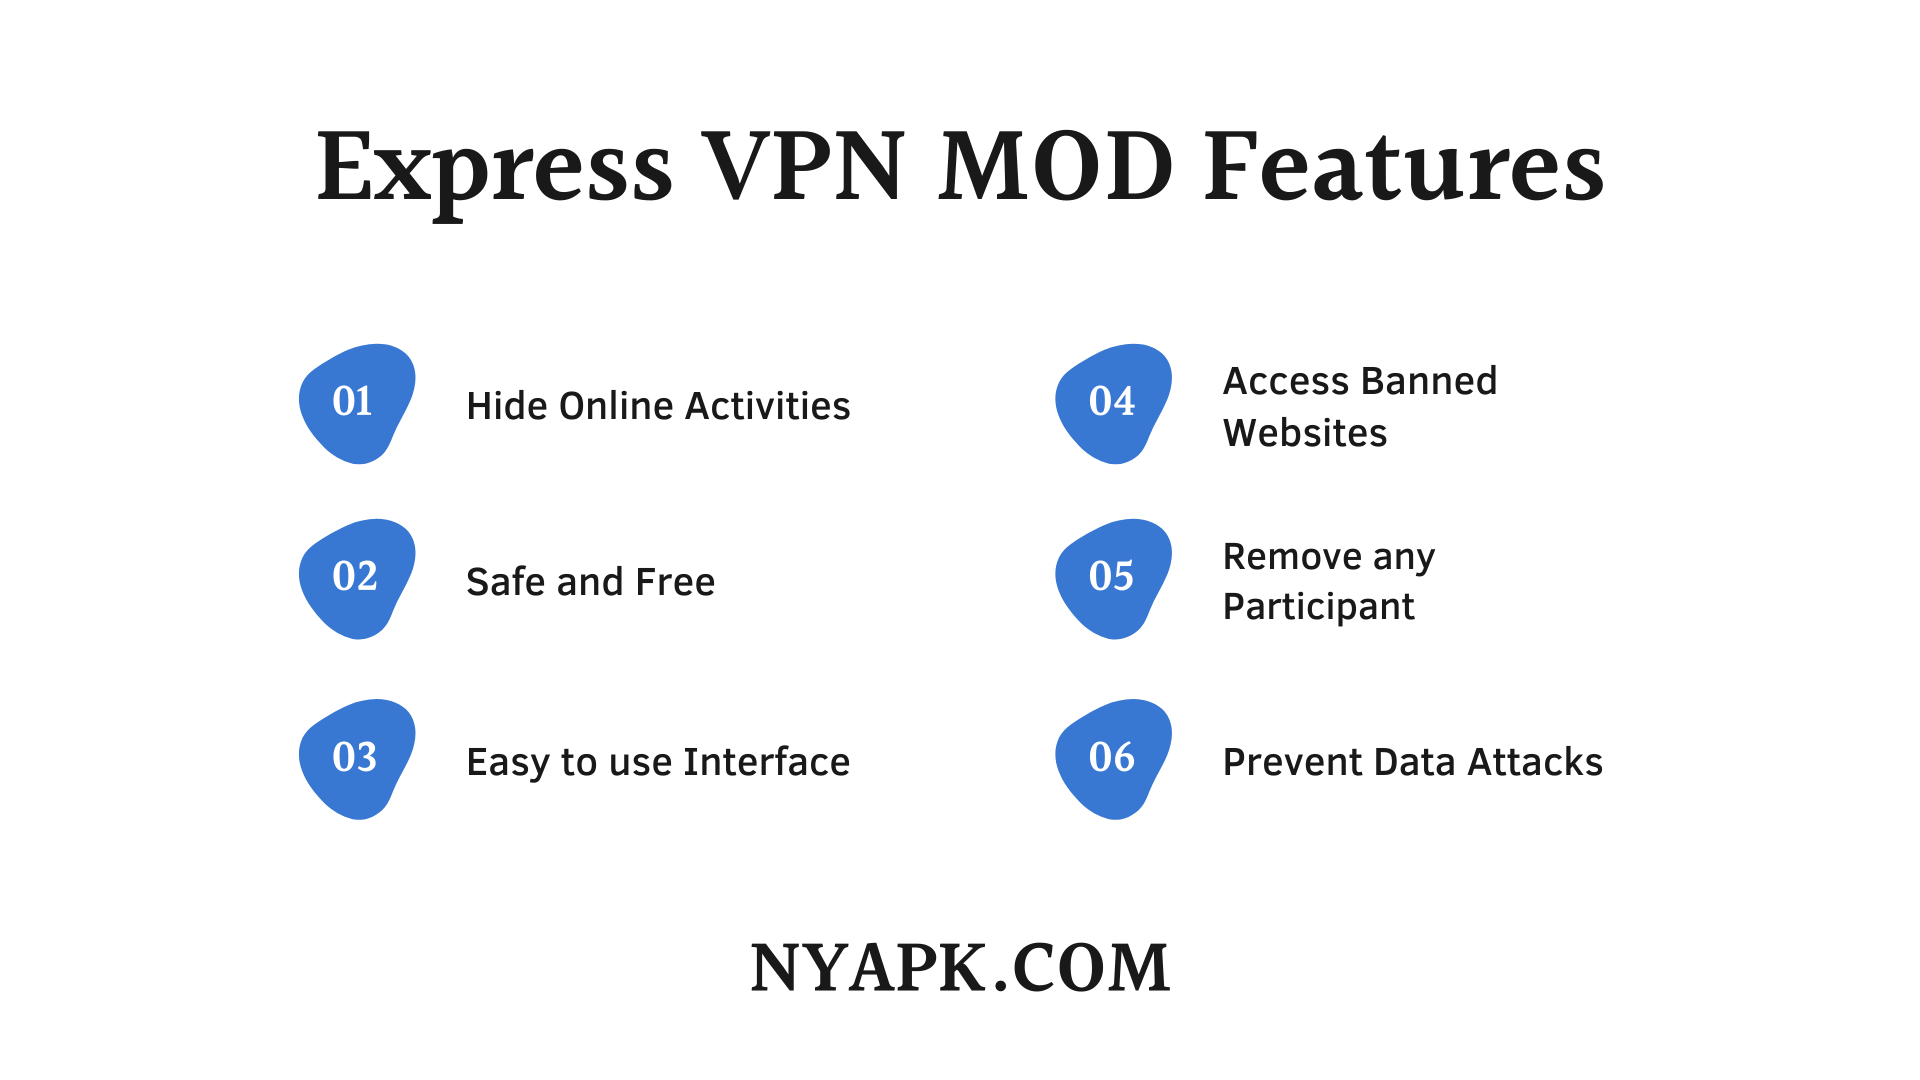 Express VPN MOD Features